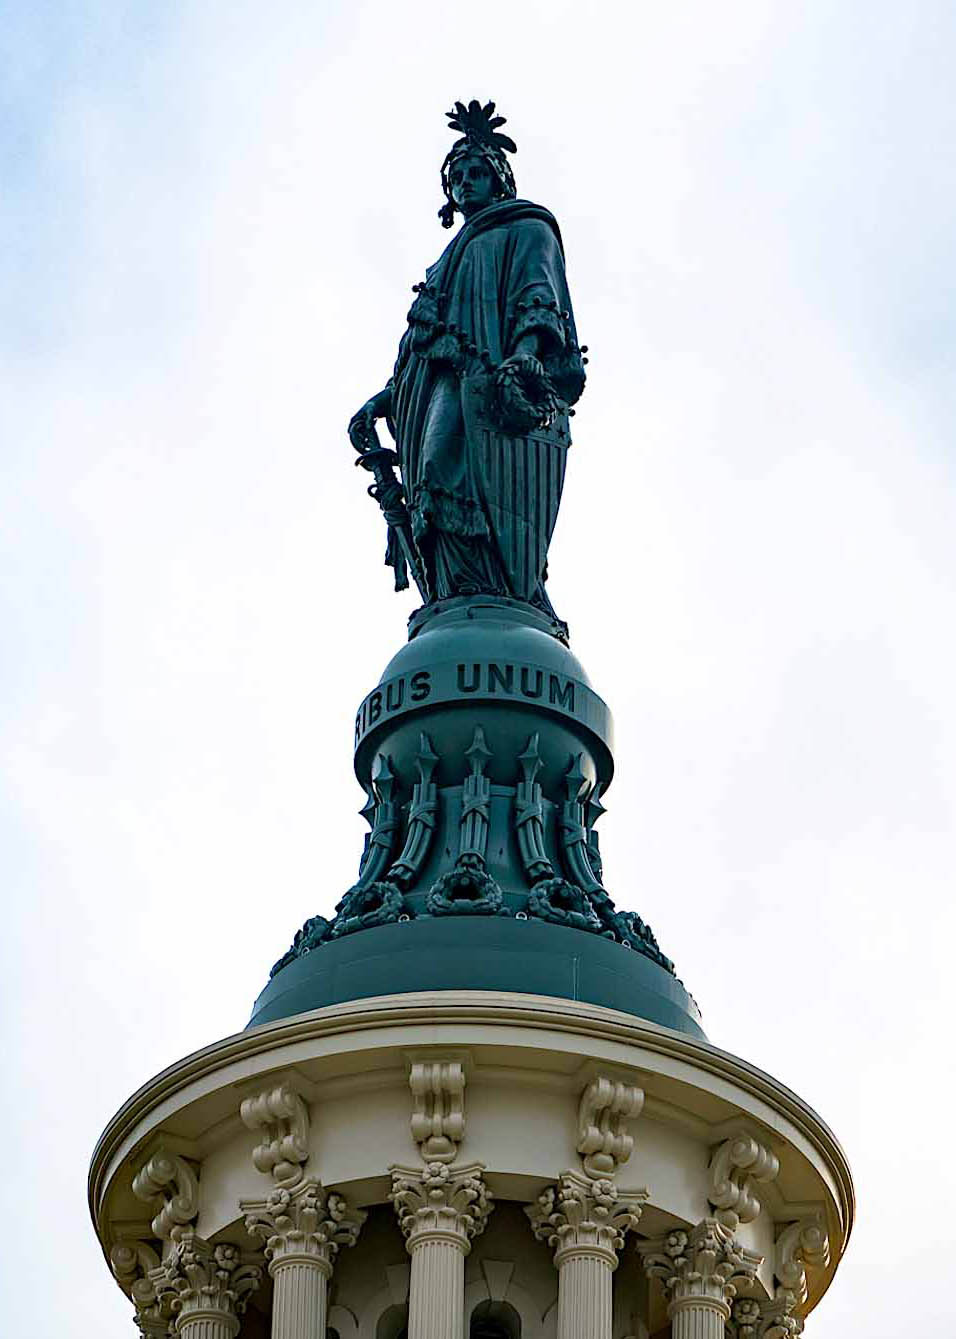 Questu omu schiavu hà castatu a statua di bronzu chì corona u Capitoliu in una fonderia di a Route 1